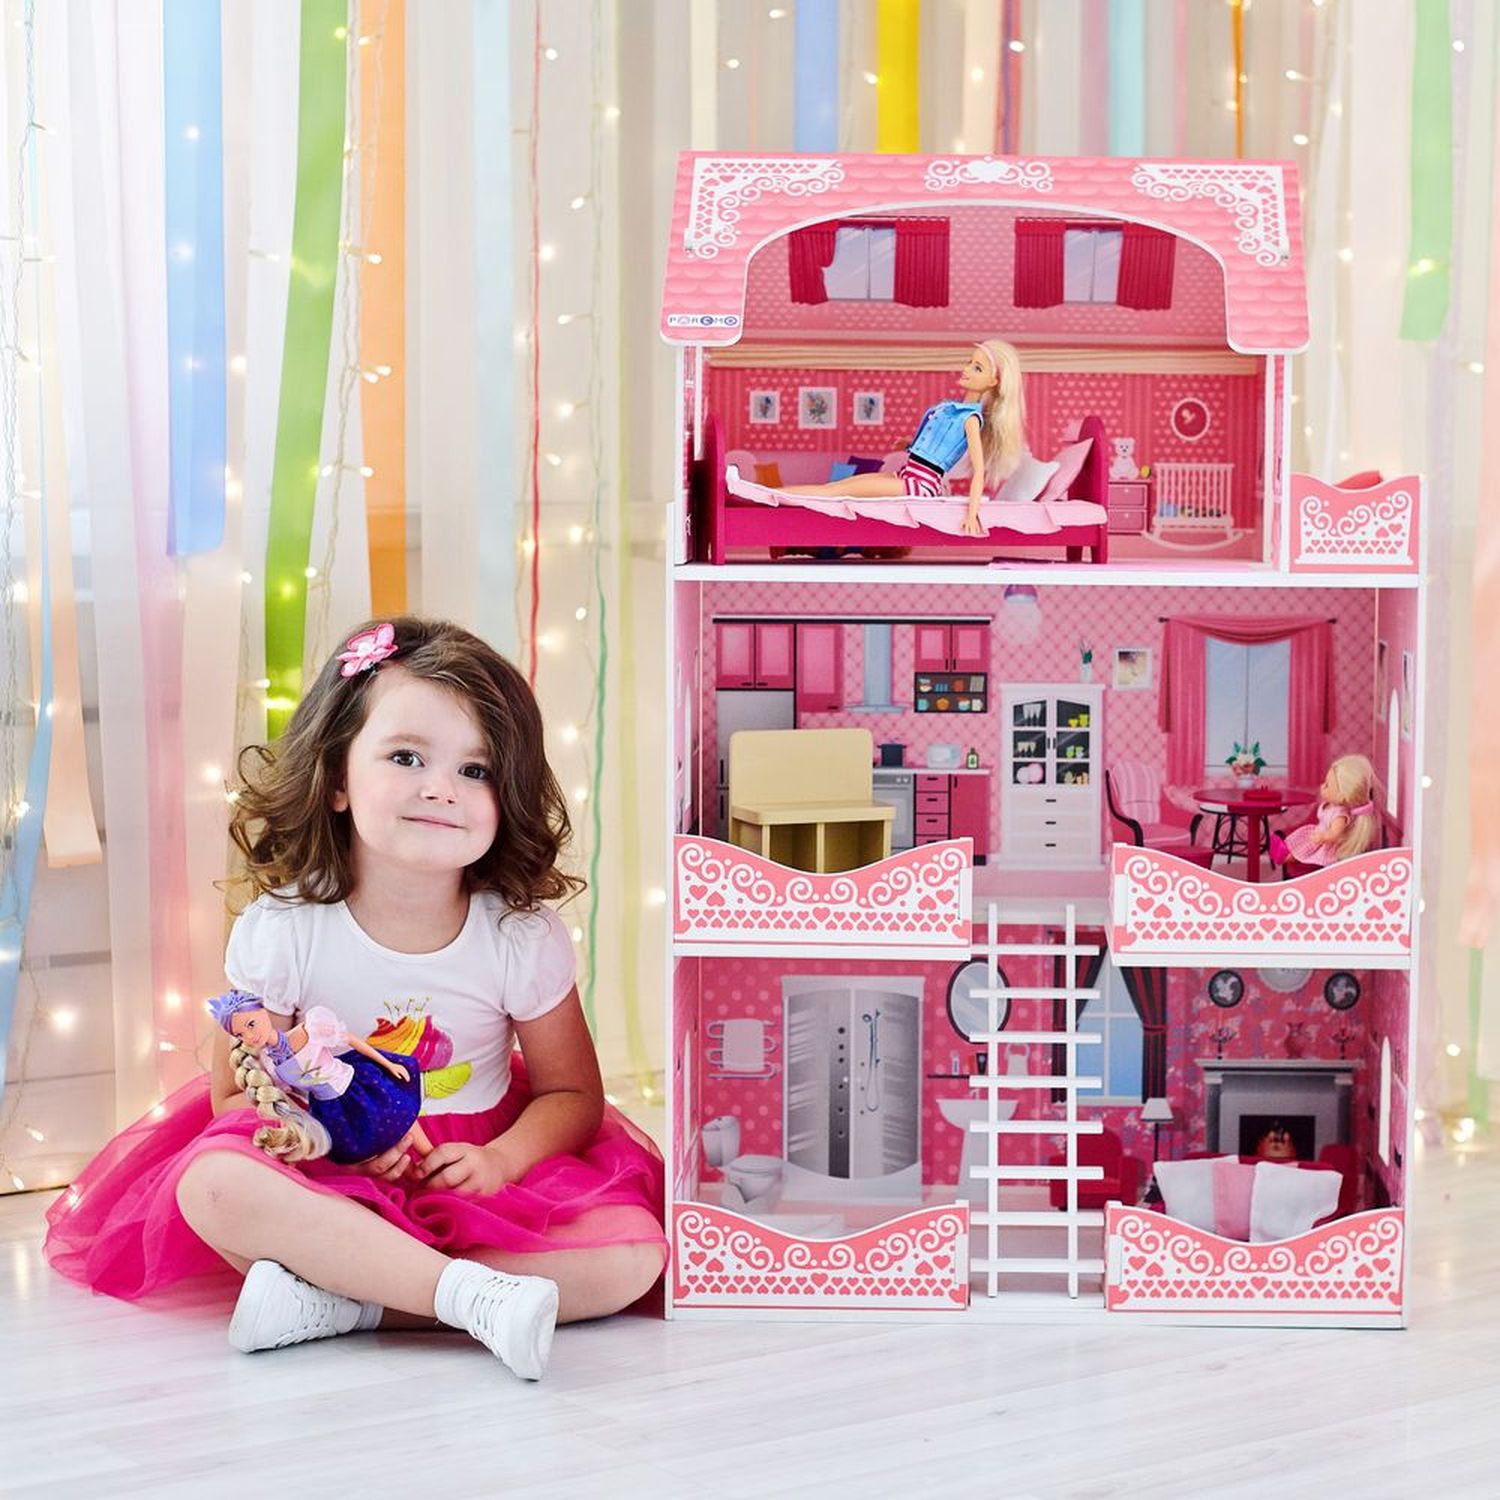 Кукольный домик Розет Шери, для кукол до 30 см 7 предметов мебели и интерьера